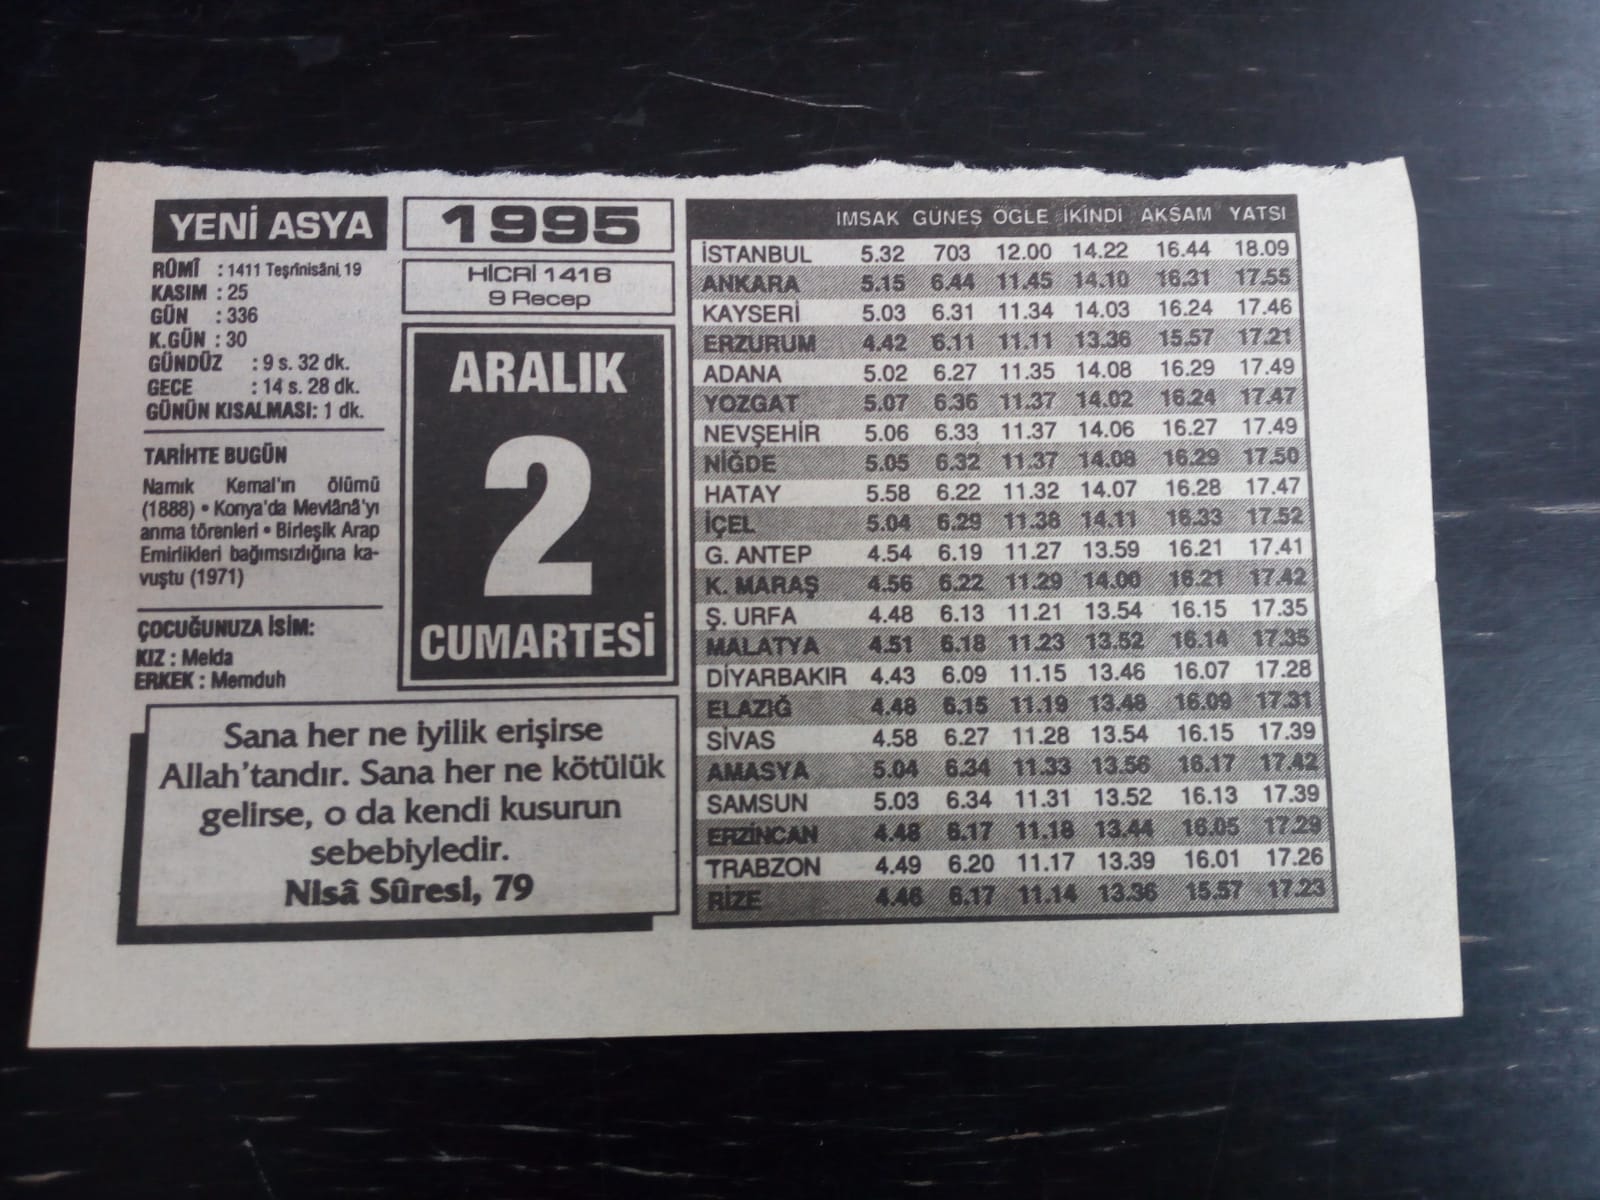 2 ARALIK CUMARTESİ 1995 - TAKVİM YAPRAĞI